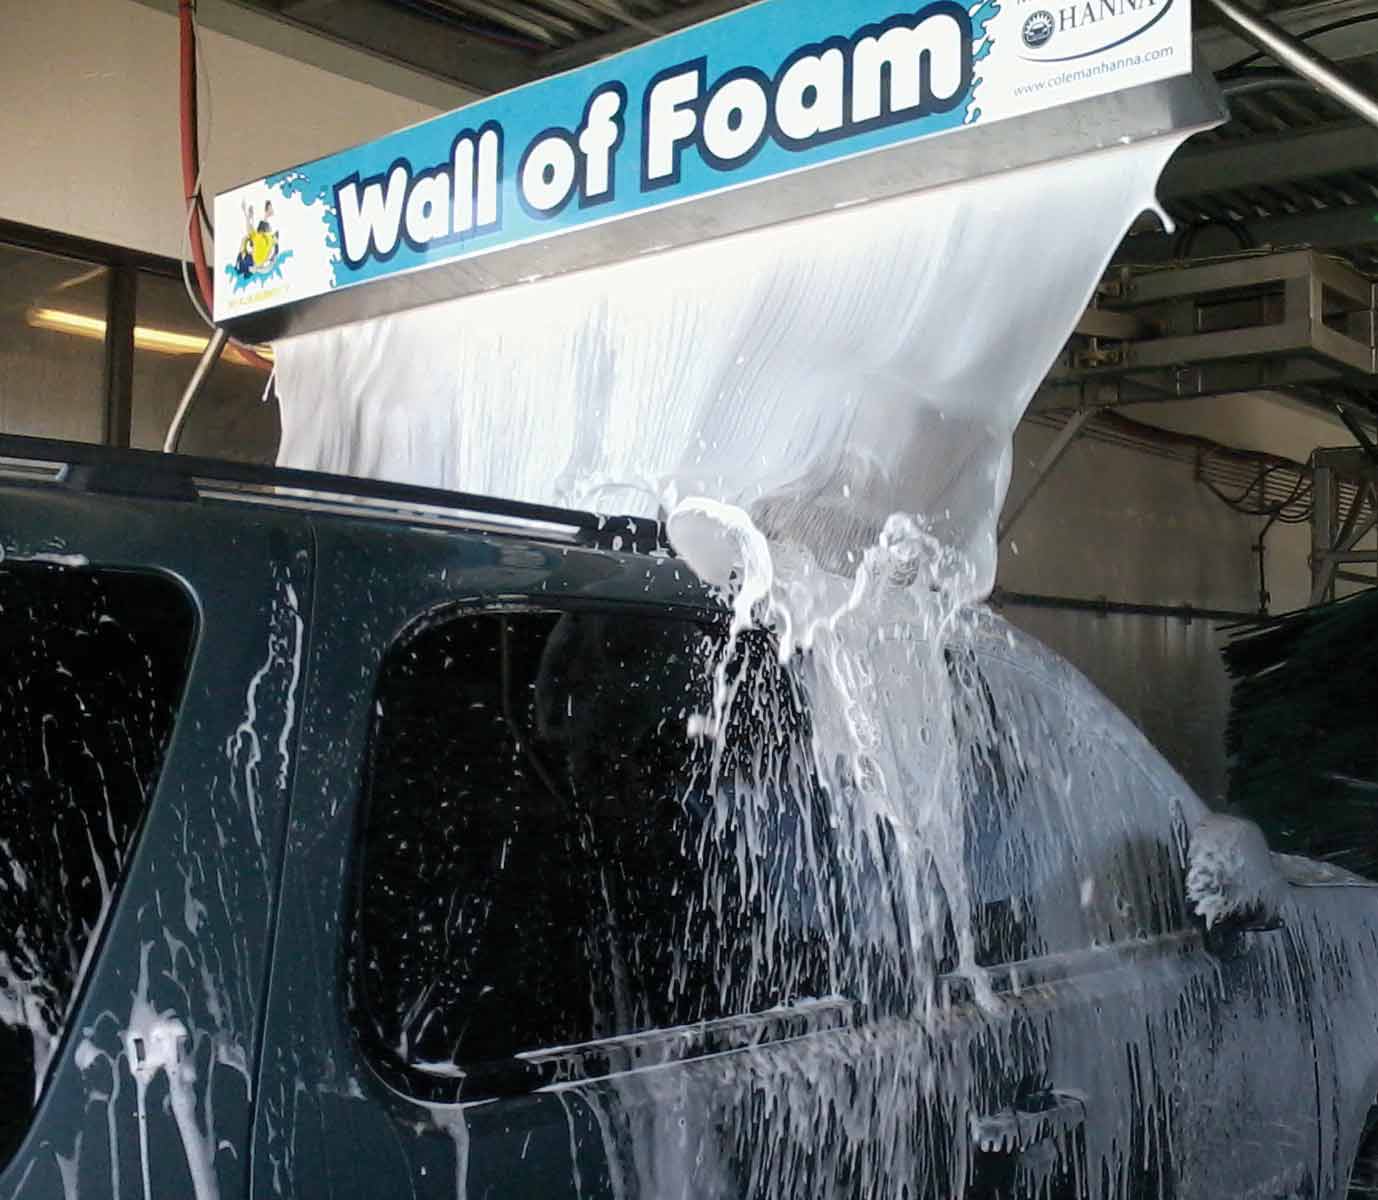 Wall of Foam